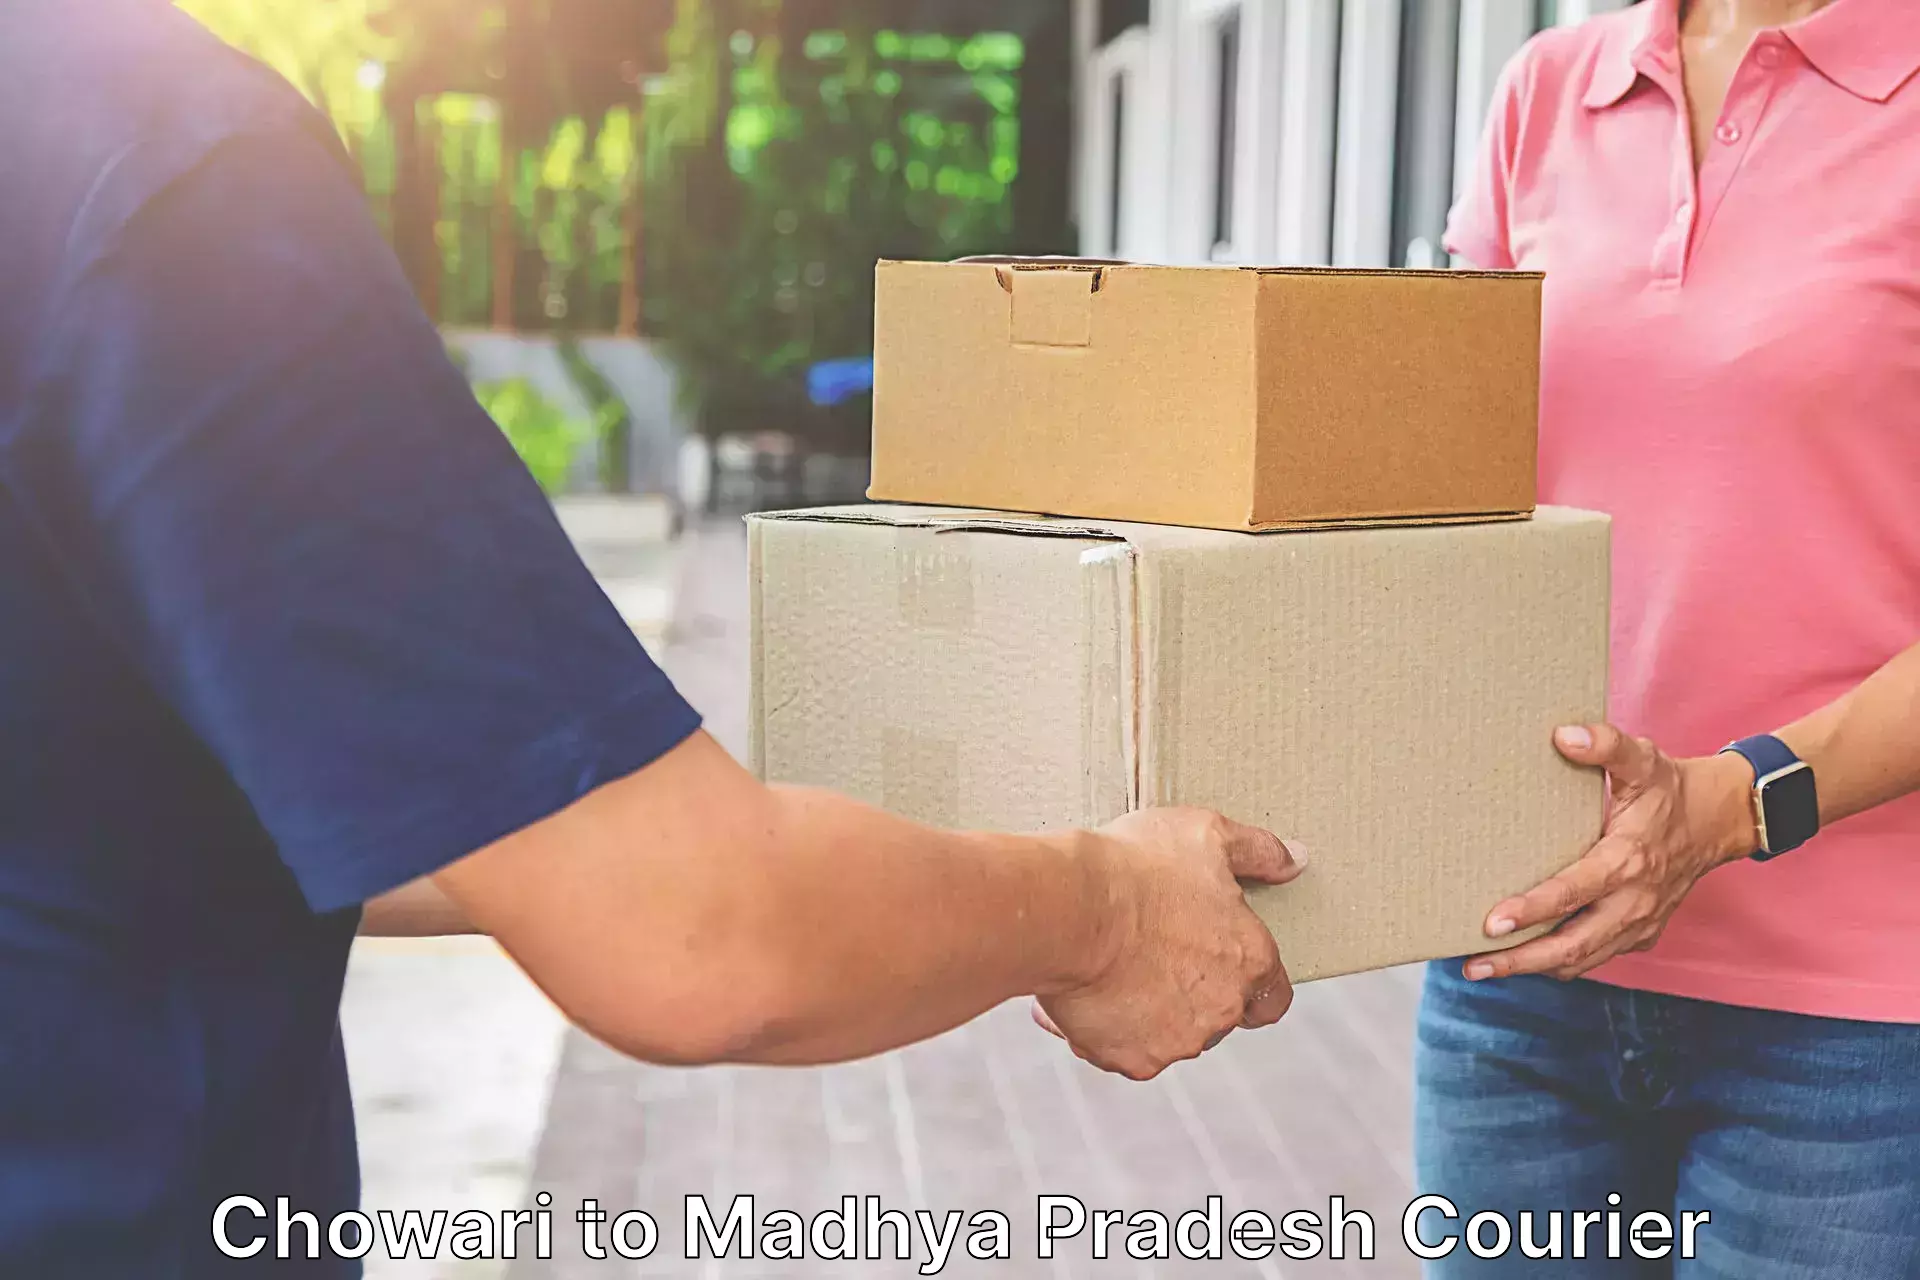 24-hour courier service Chowari to Madhya Pradesh